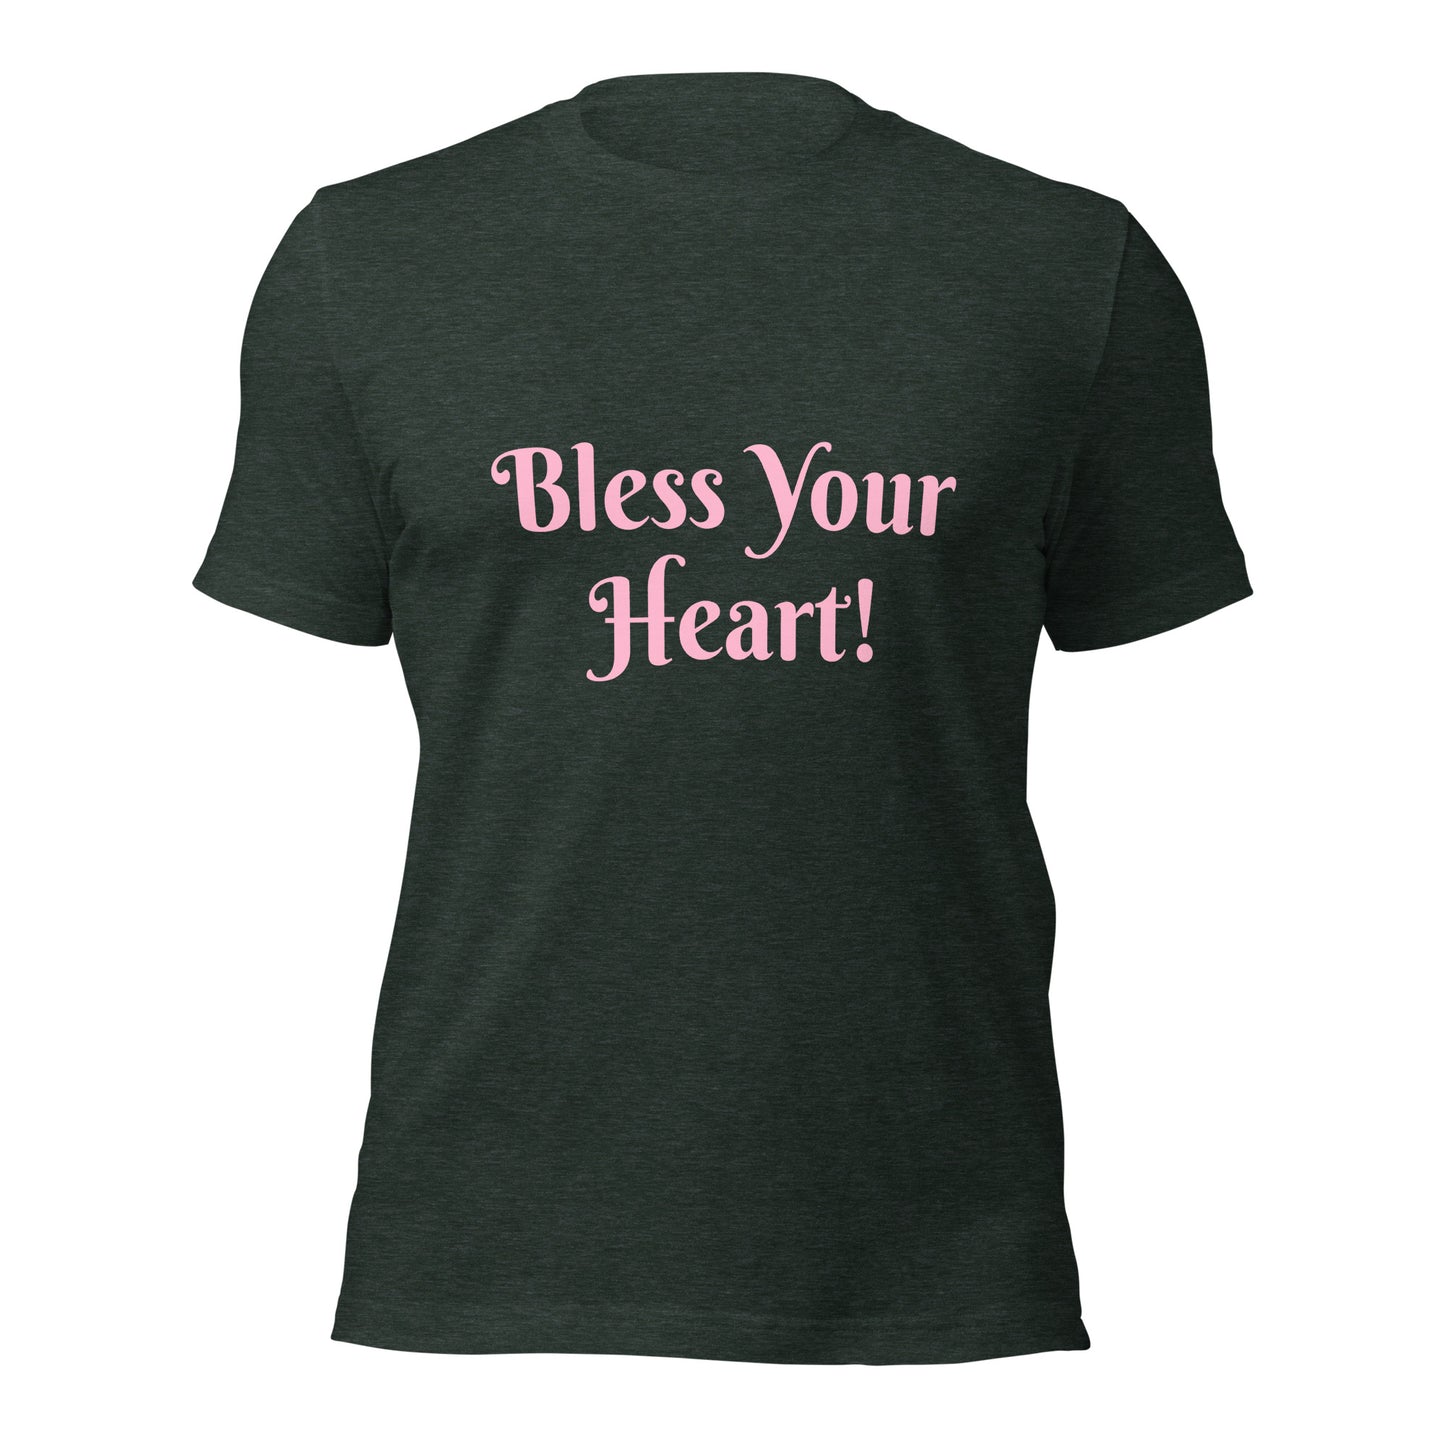 Bless Your Heart! Unisex t-shirt